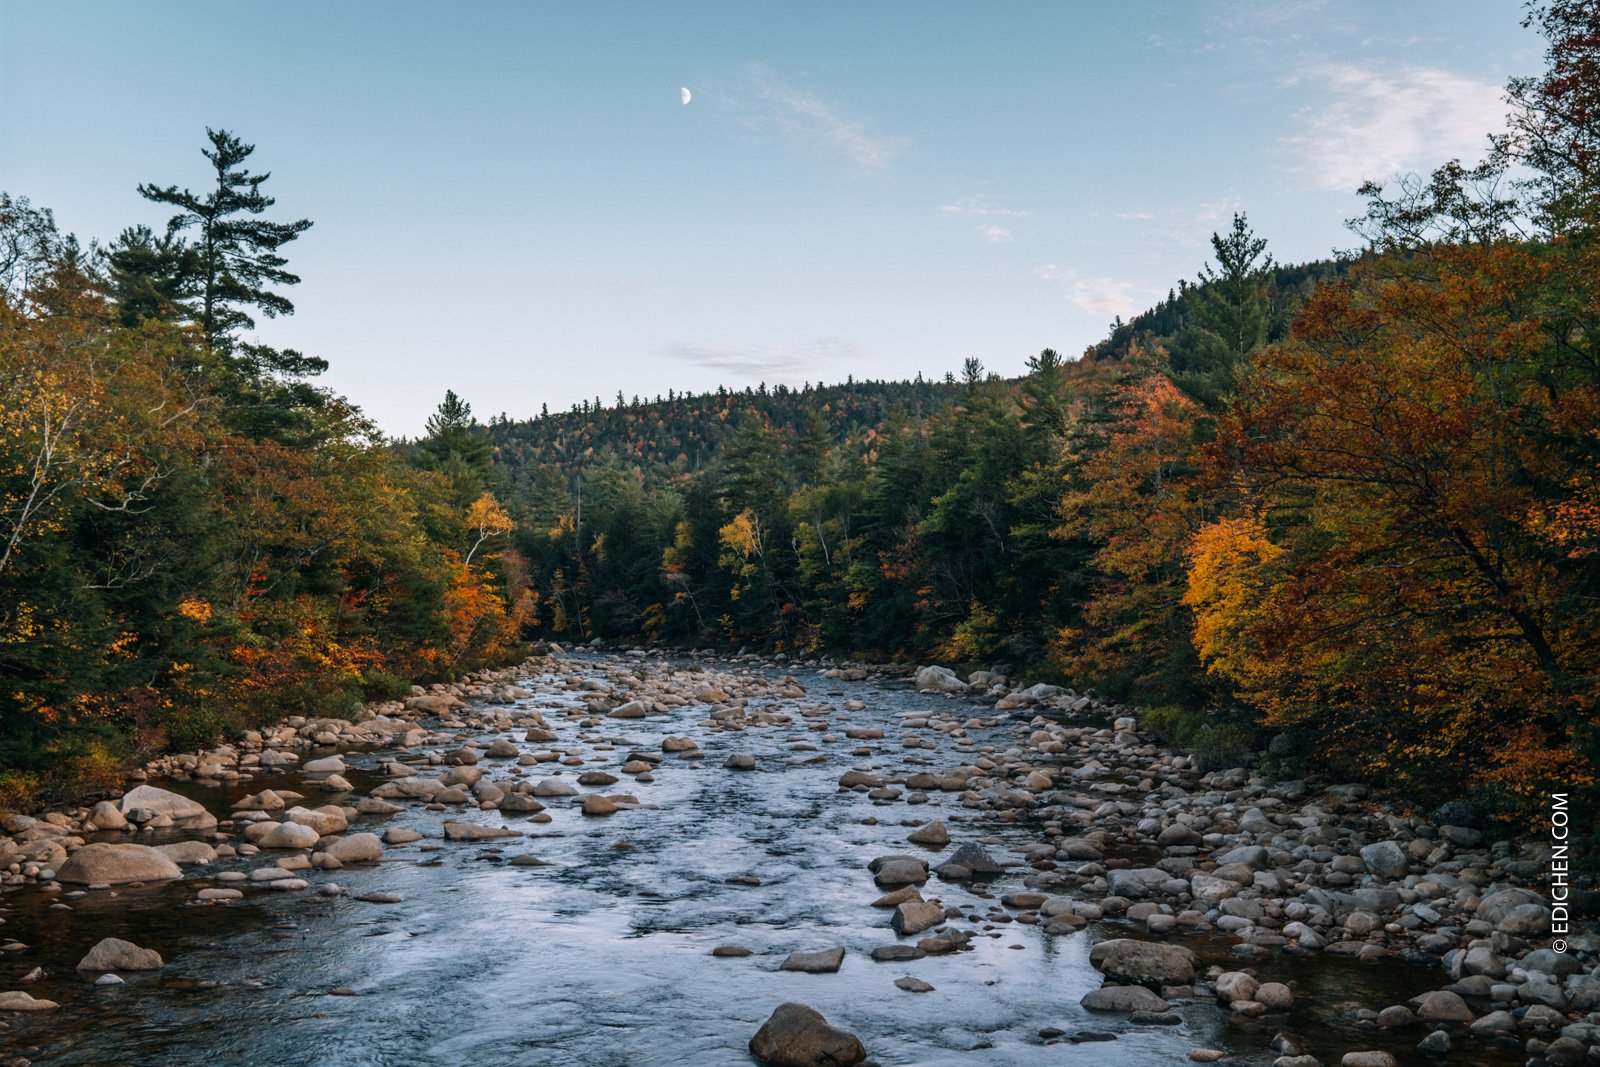  新罕布什尔州白山国家森林公园5个值得拍的机位 